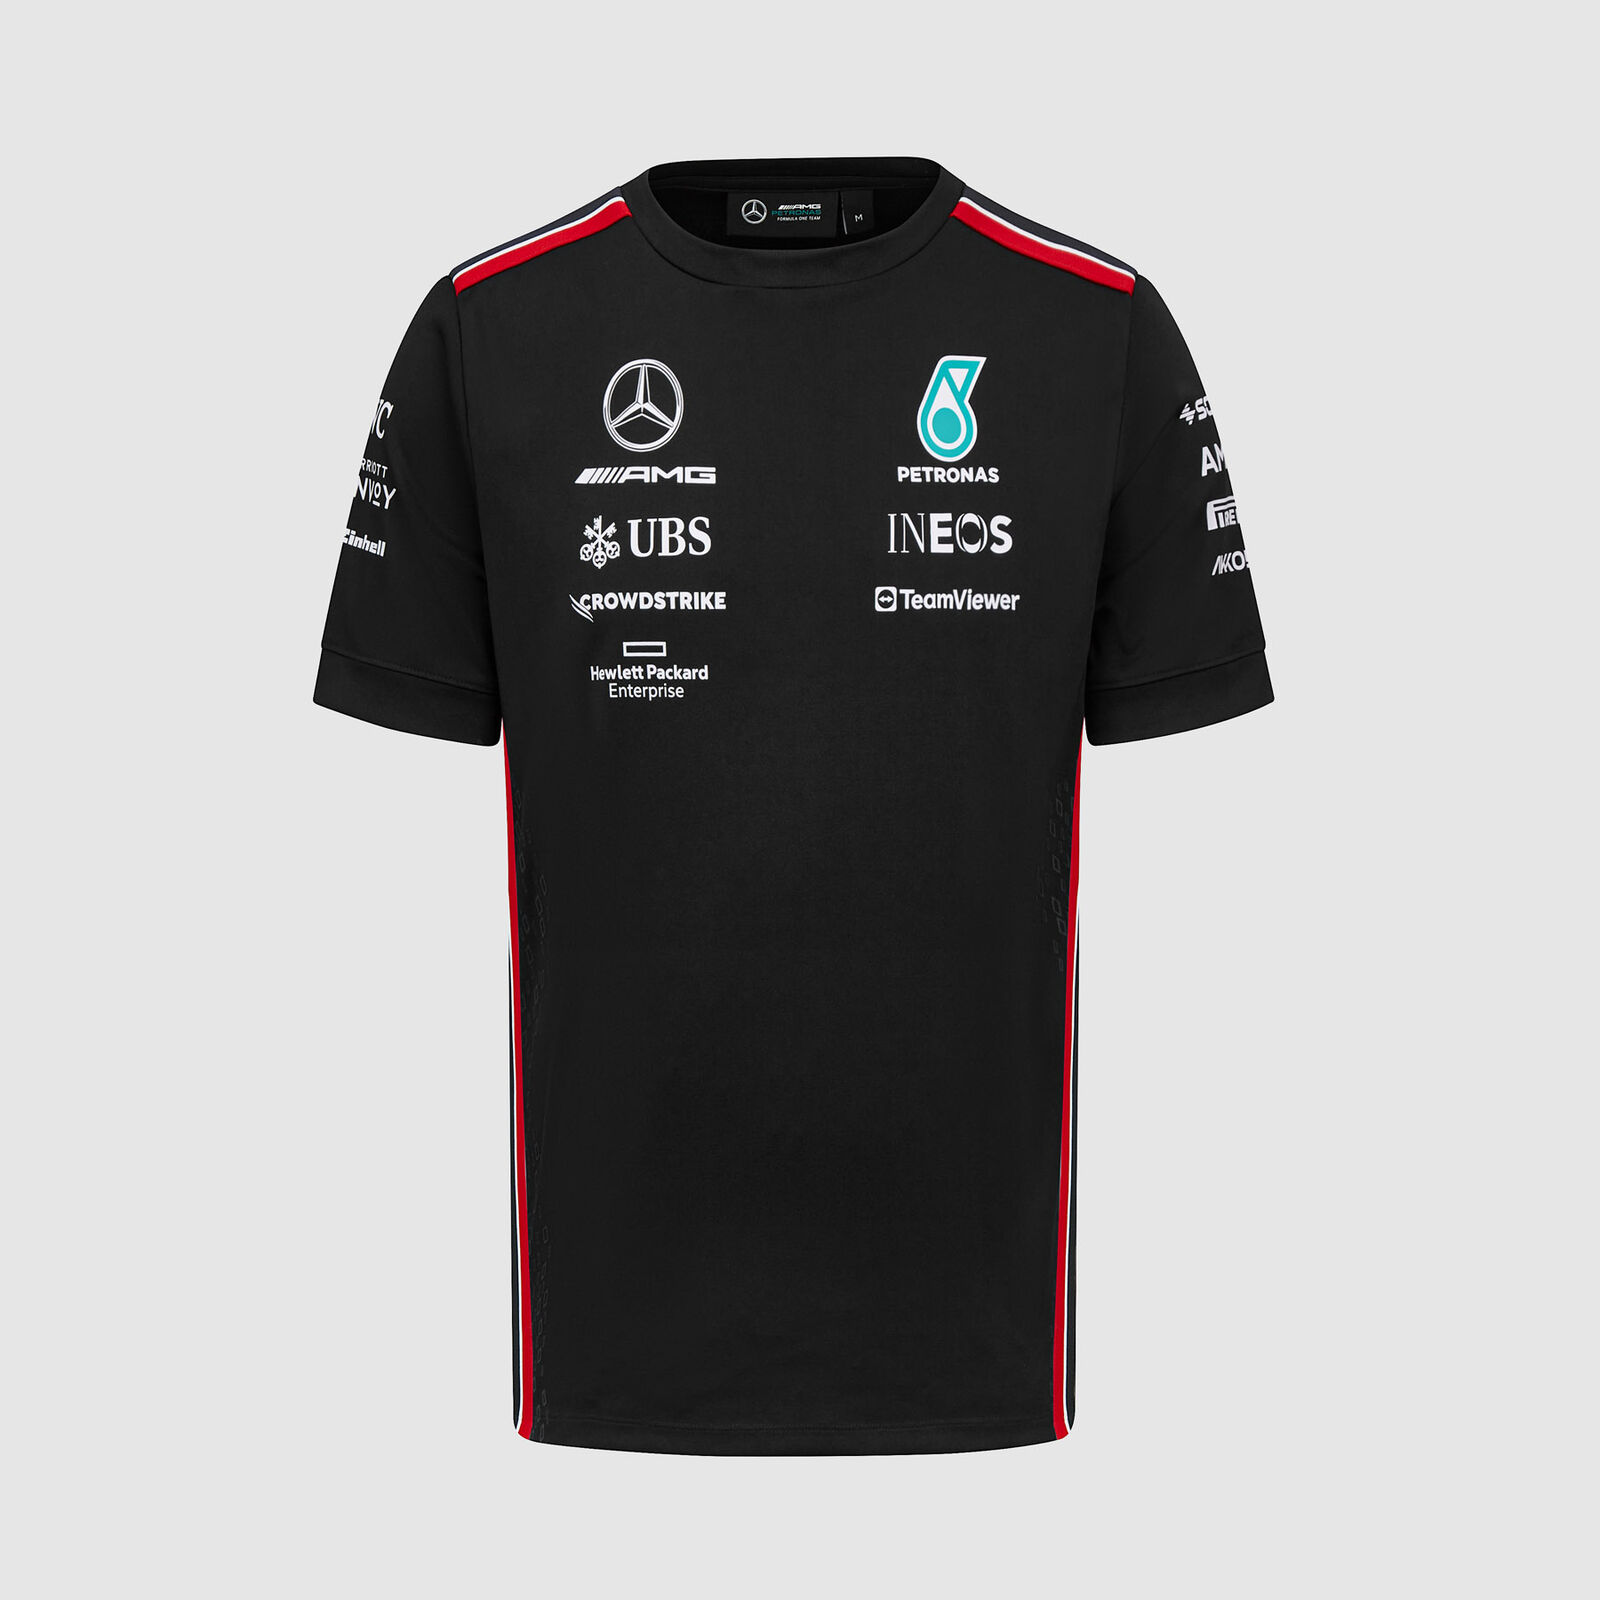 Fan Gift Made Red Bull 3D Max Verstappen Red Bull Racing T-Shirt Unisex  Dark Tee